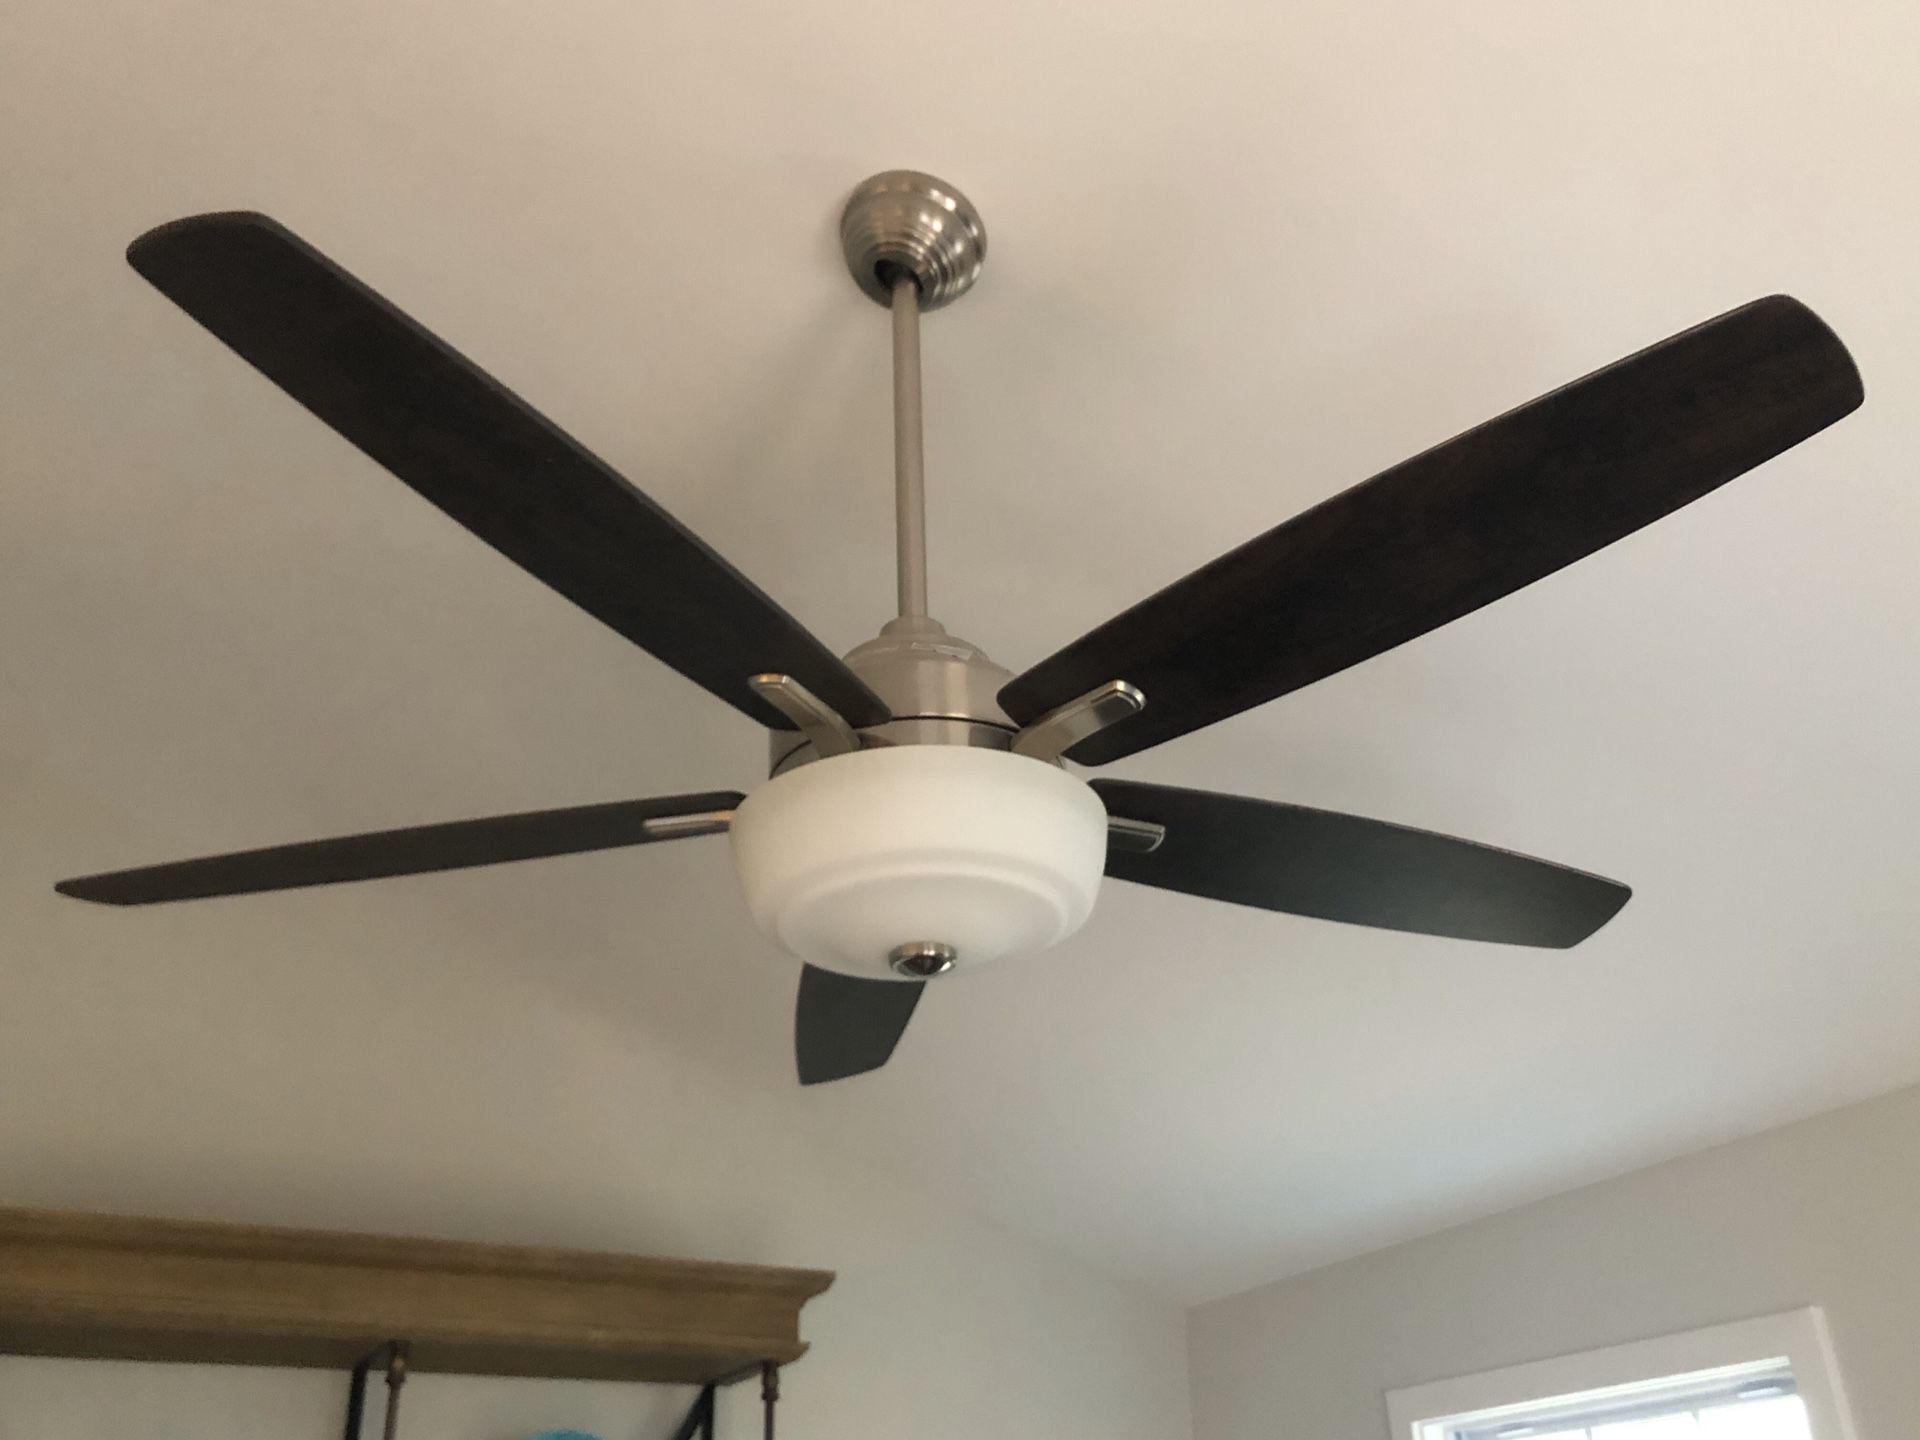 Ceiling fan brand new